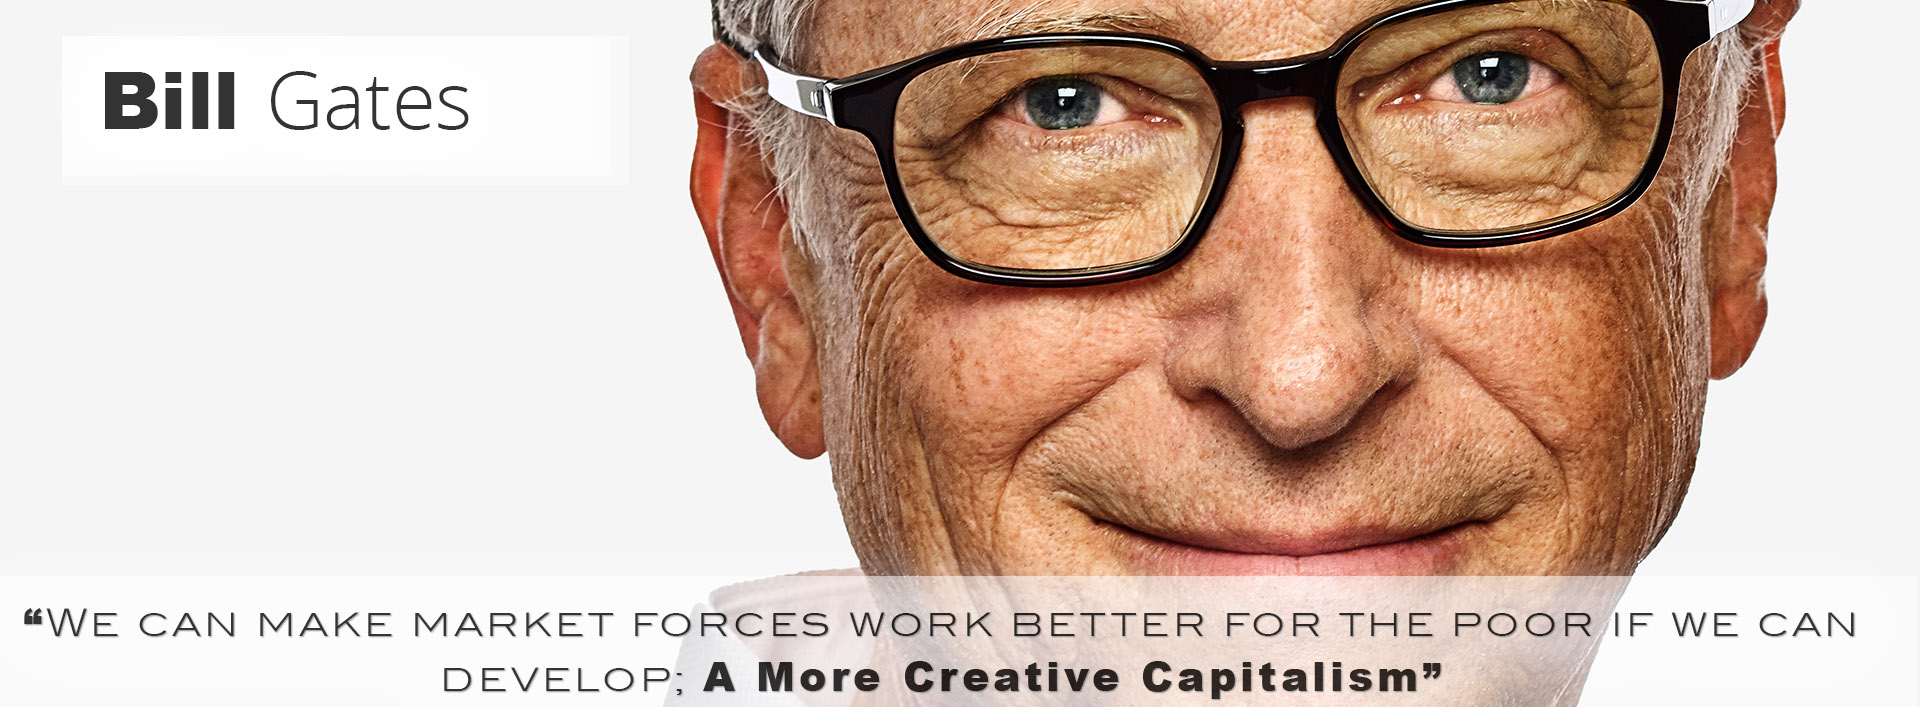 Bill-Gates__A-More-Creative-Capitalism